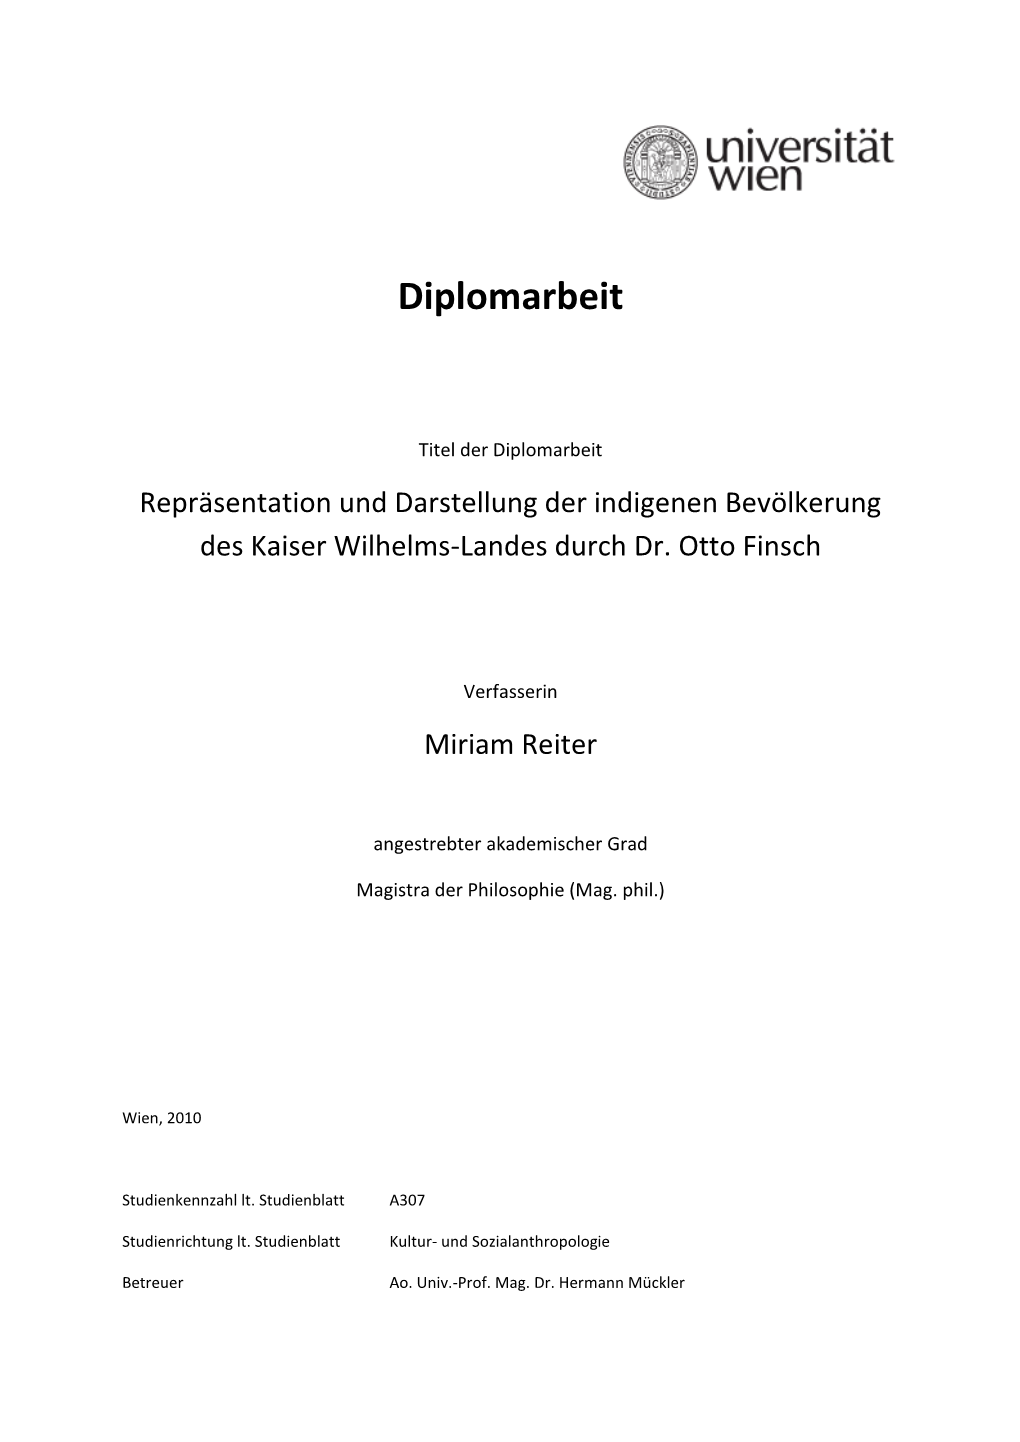 Repräsentation Und Darstellung Der Indigenen Bevölkerung Des Kaiser Wilhelms-Landes Durch Dr. Otto Finsch